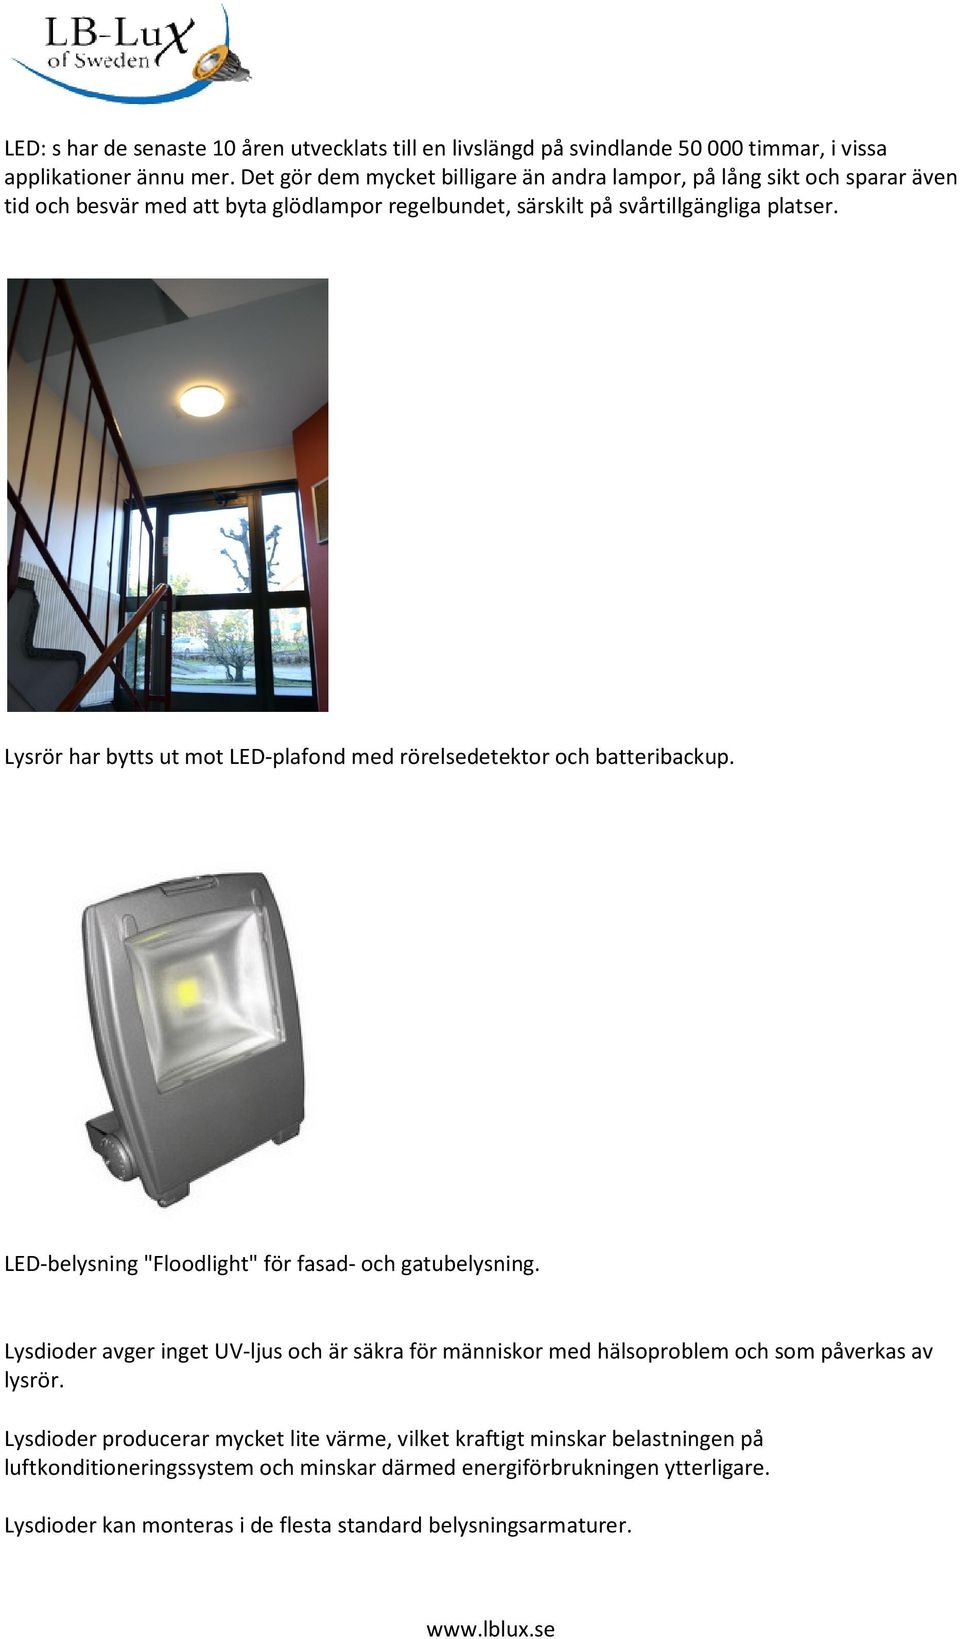 Lysrör har bytts ut mot LED-plafond med rörelsedetektor och batteribackup. LED-belysning "Floodlight" för fasad- och gatubelysning.